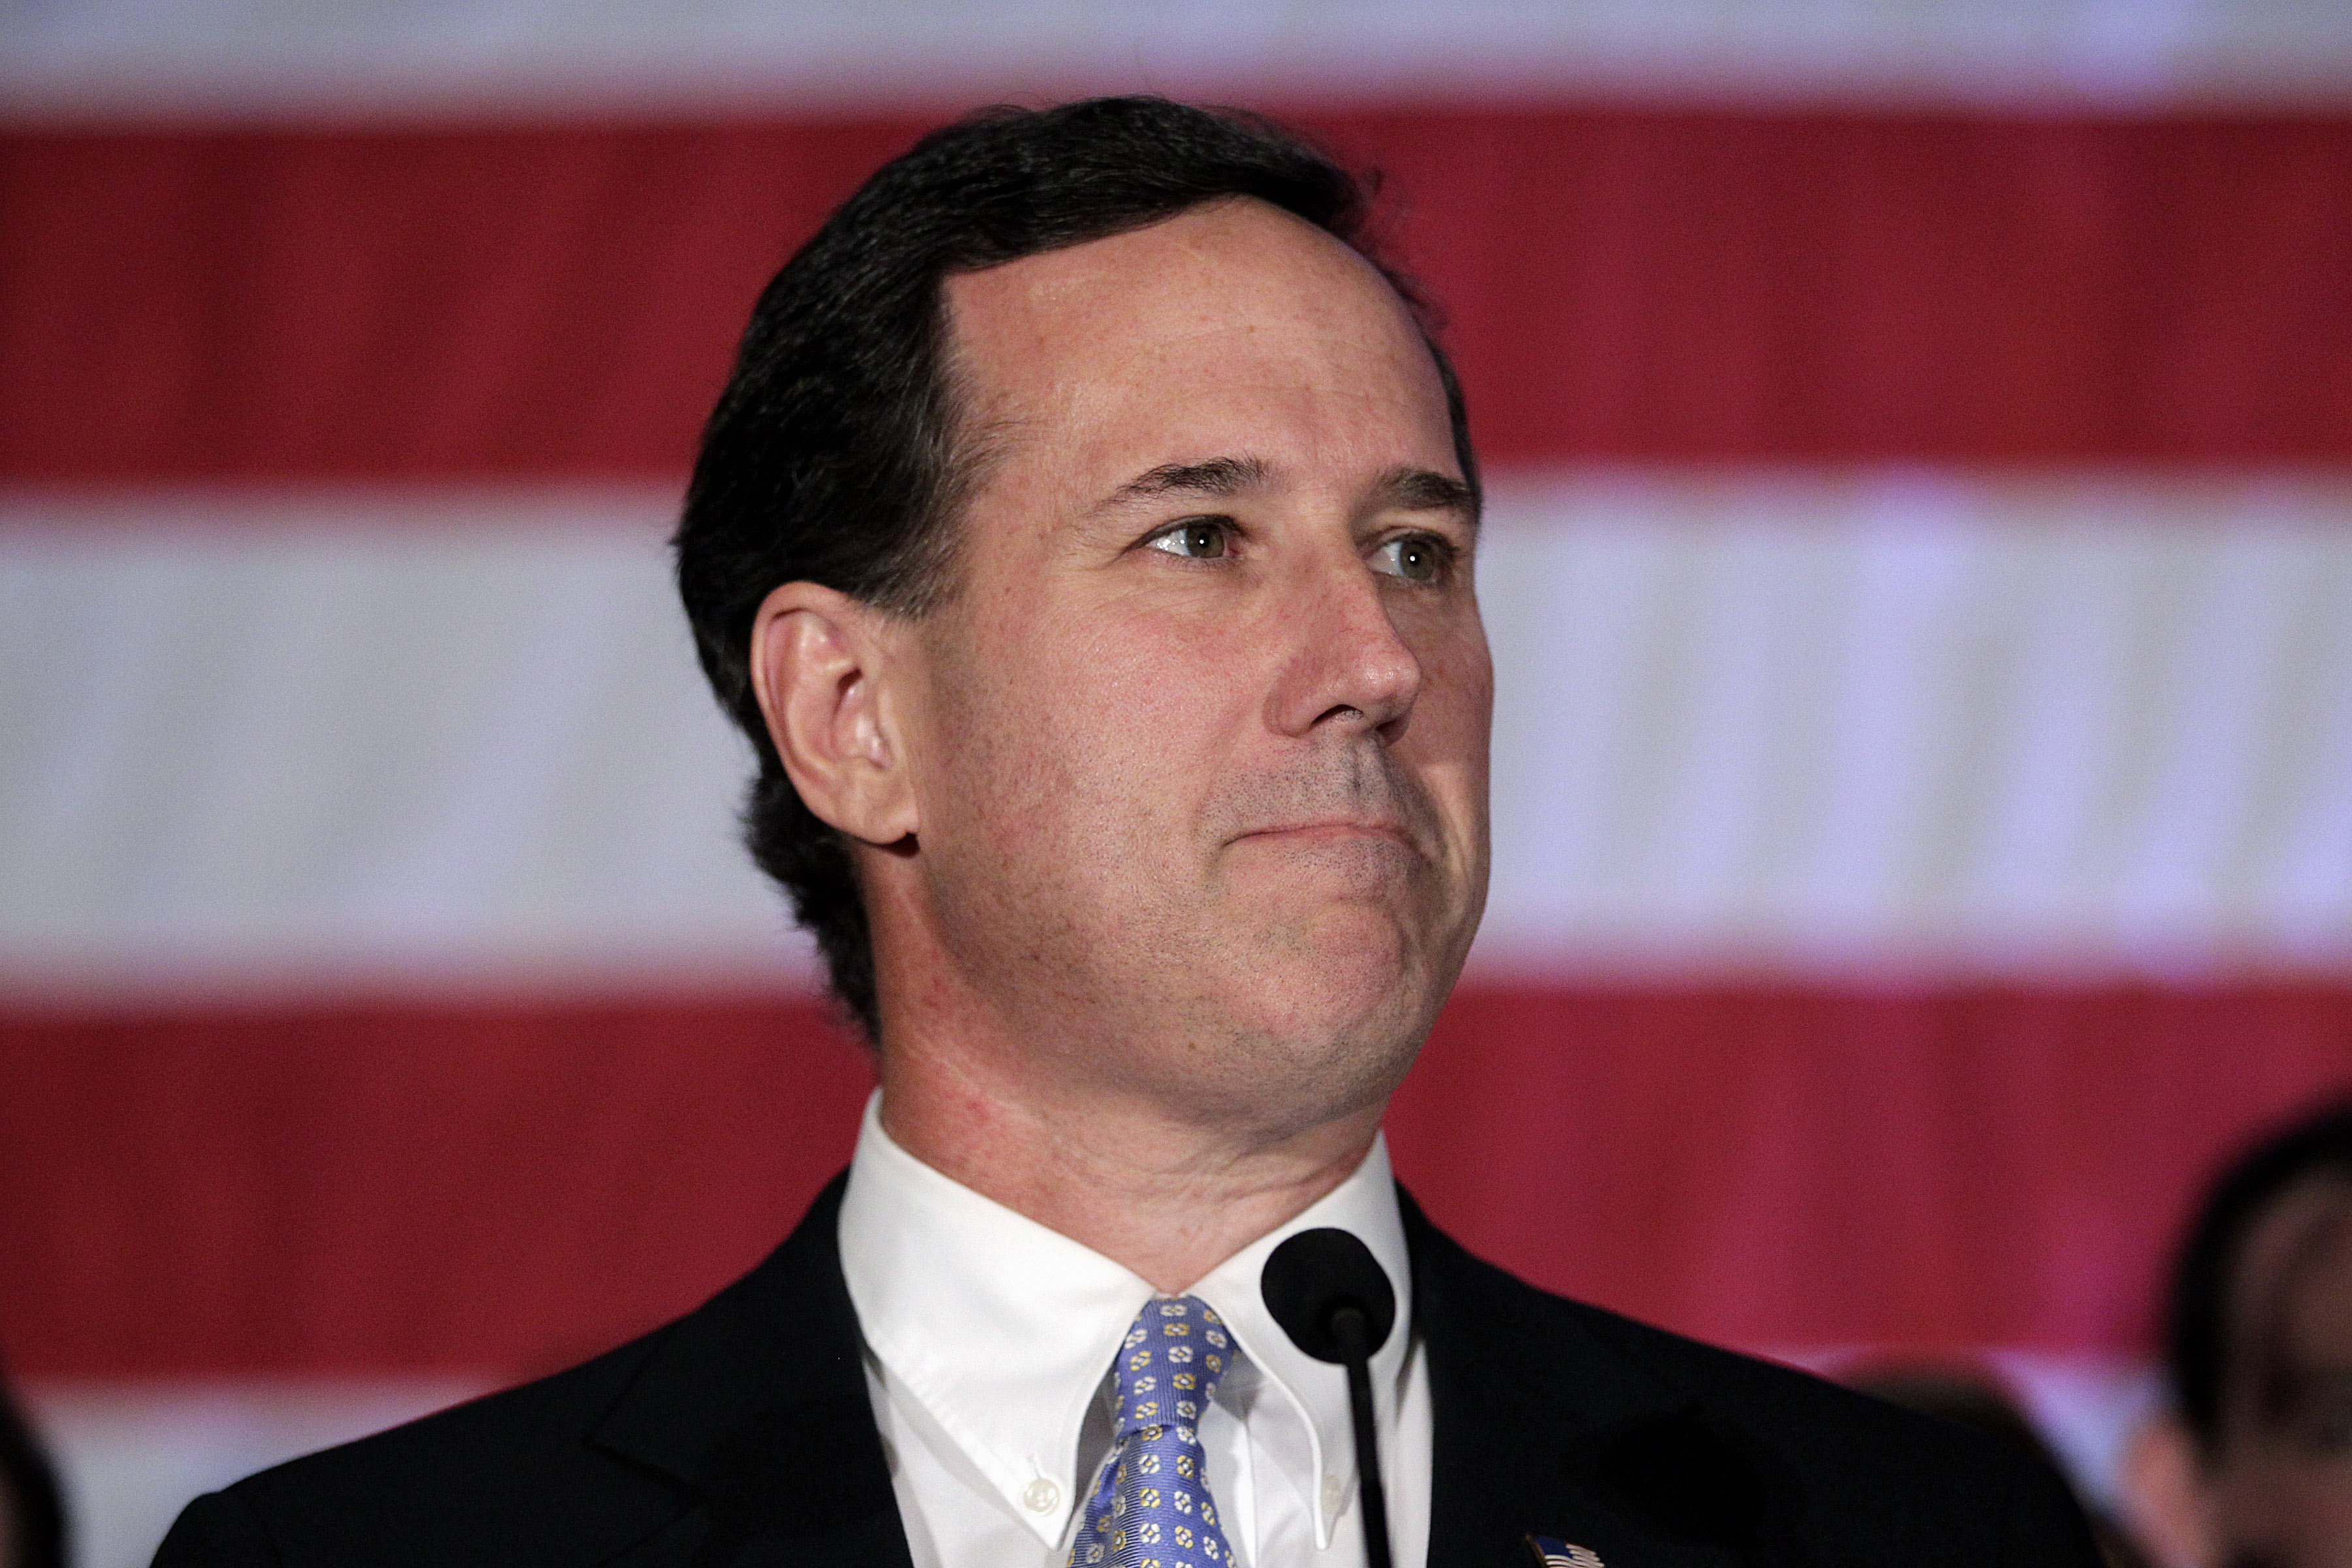 Rick Santorum beskyller Romney för att vara en republikansk Barack Obama och satsar nu i stället allt på sin hemstat Pennsylvania.